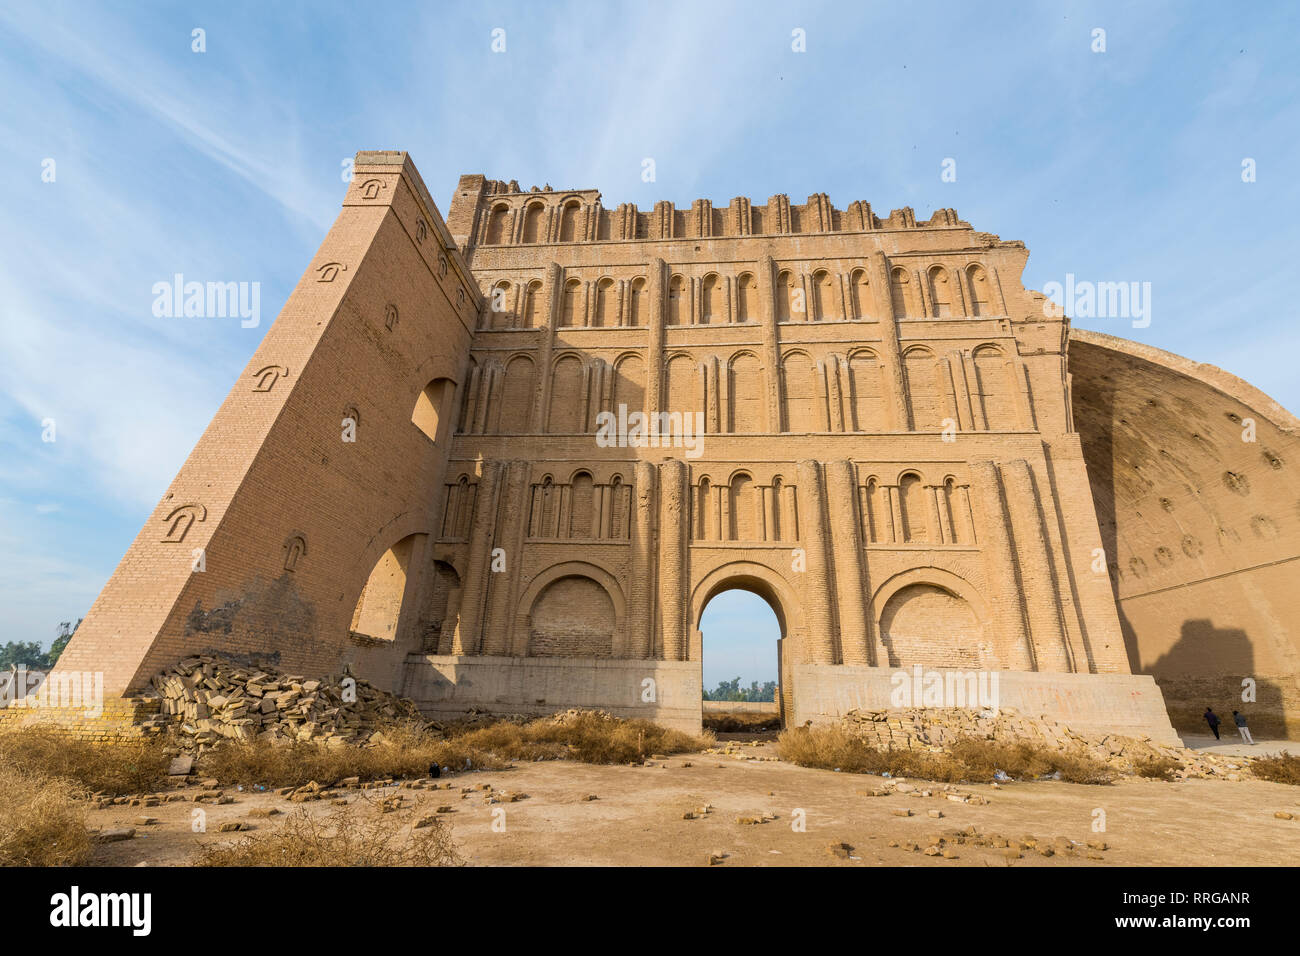 La ville ancienne de Ctesiphon avec plus grande arche de brique dans le monde, Ctesiphon, Iraq, Middle East Banque D'Images